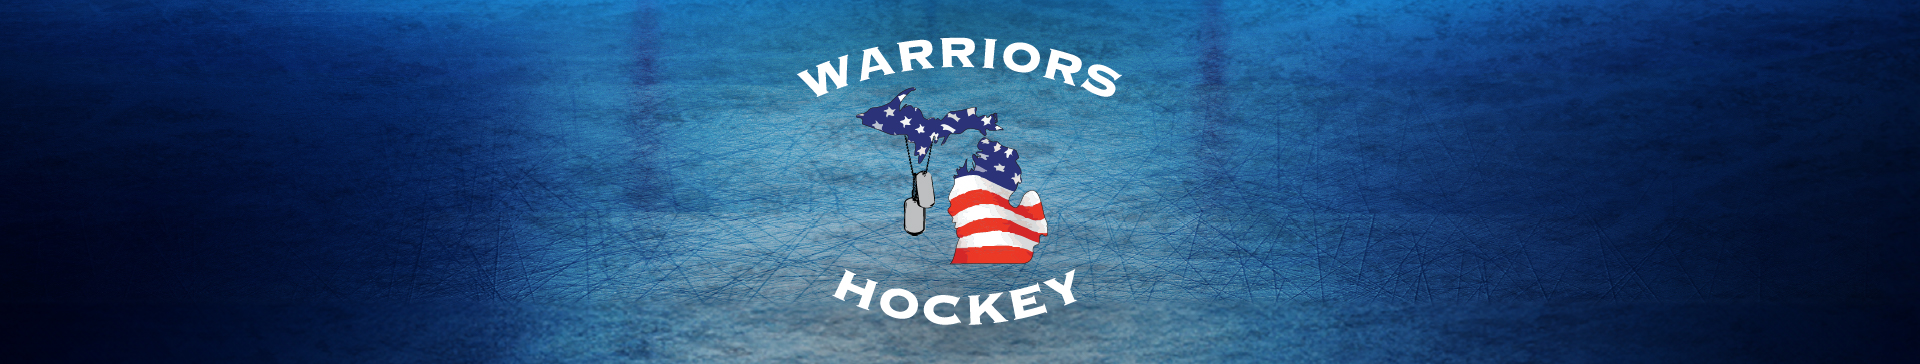 Michigan Warriors Hockey Logo